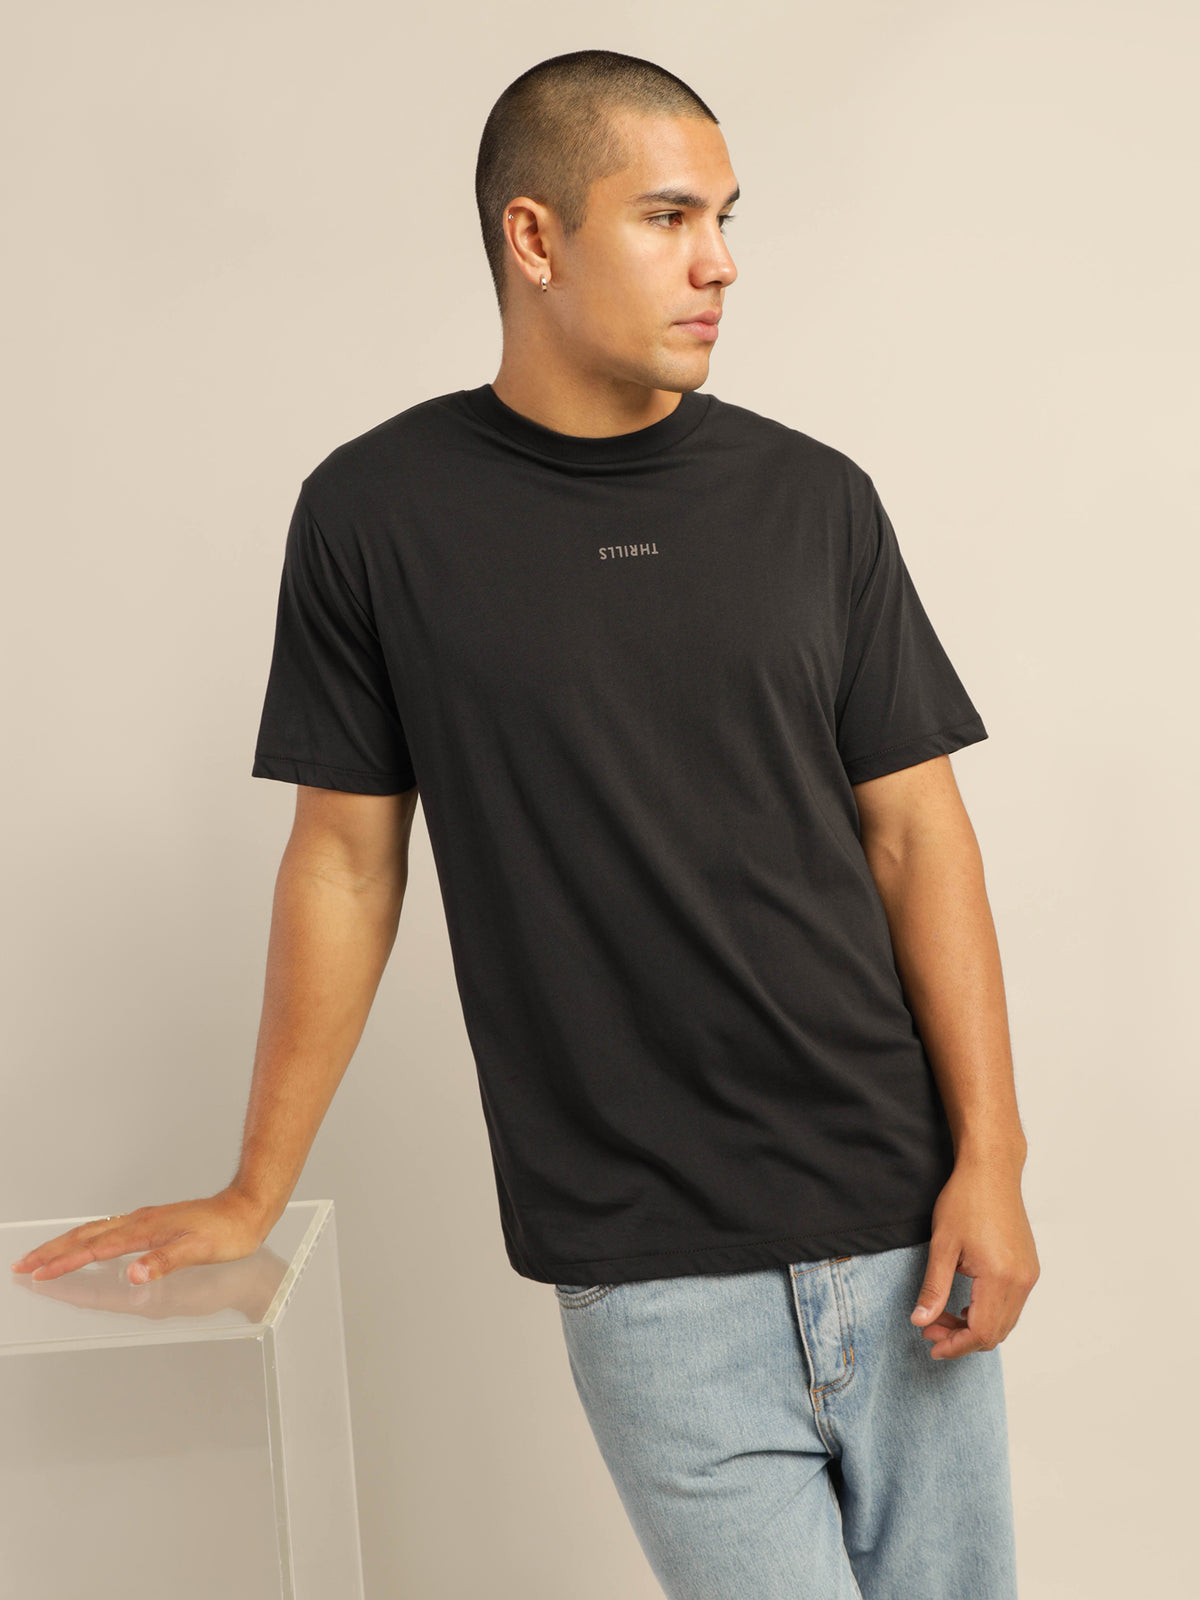 Minimal Thrills Merch Fit T-Shirt in Vintage Black